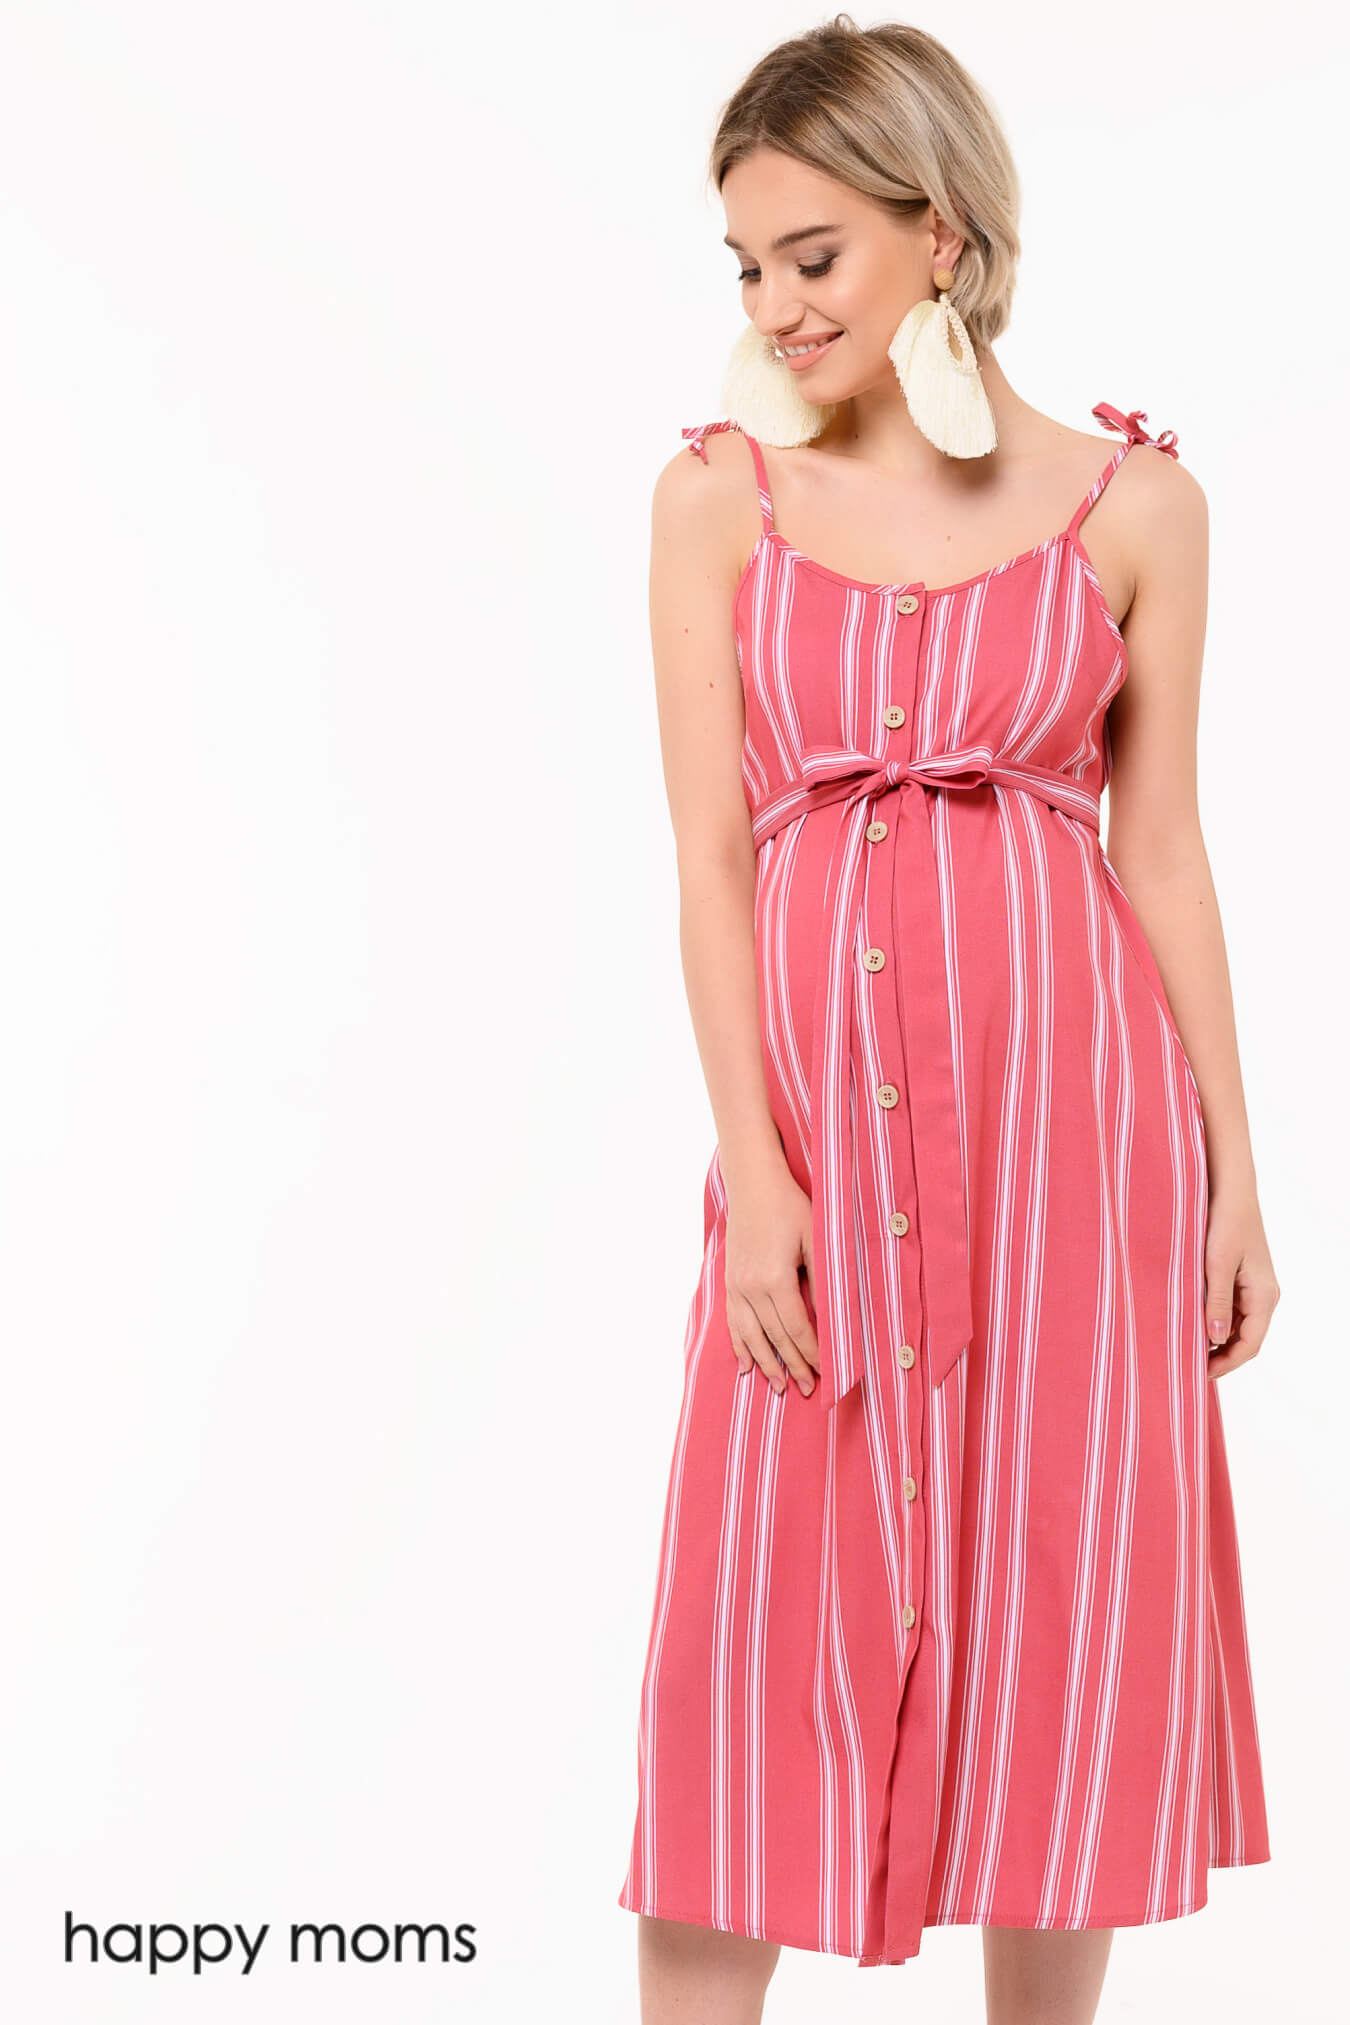 Сарафан для беременных женщин летний длинный офисный платье одежда для будущих мам / Happy Moms